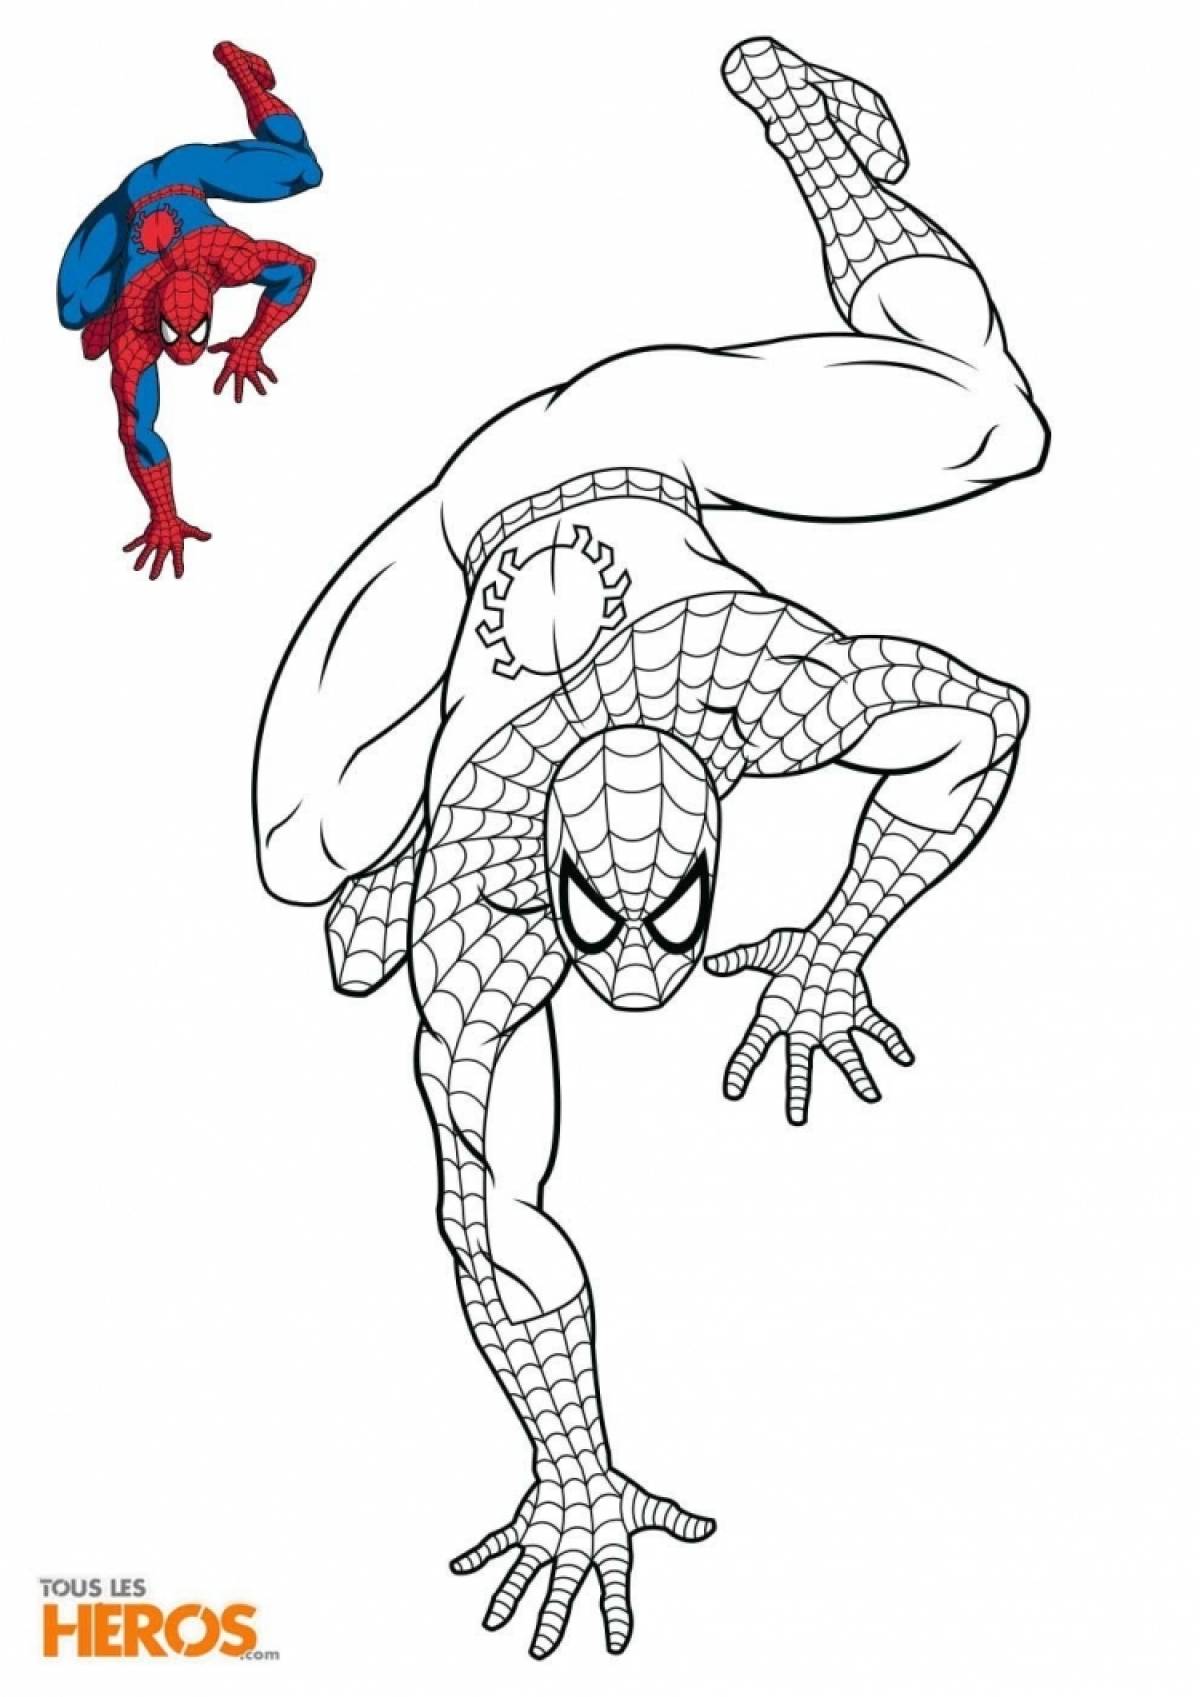 Spiderman colored #4